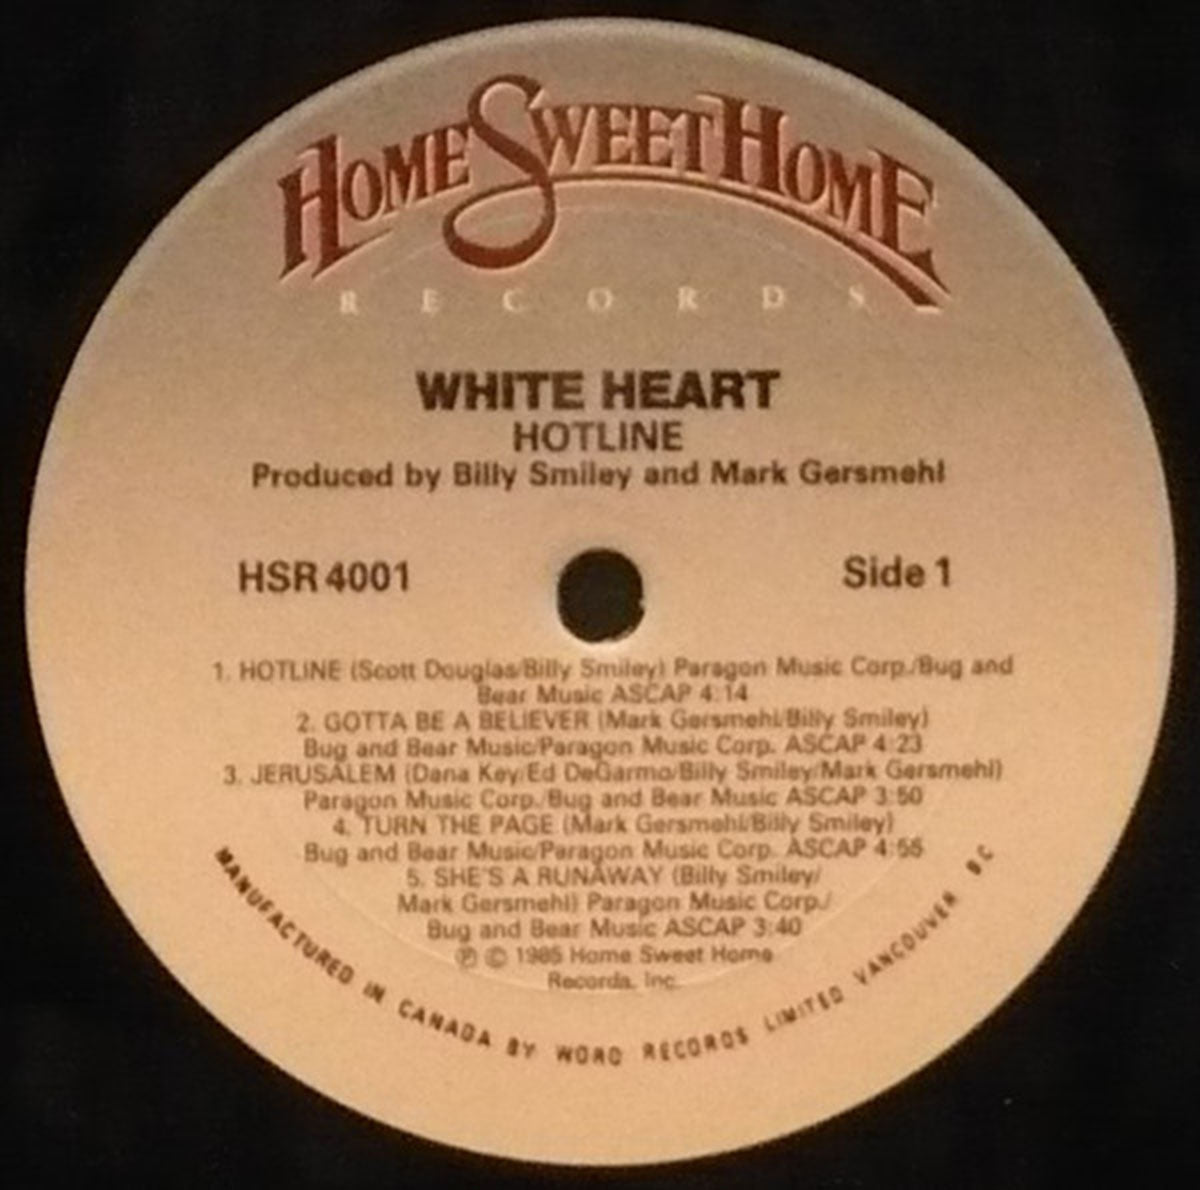 WhiteHeart – Hotline - 1985